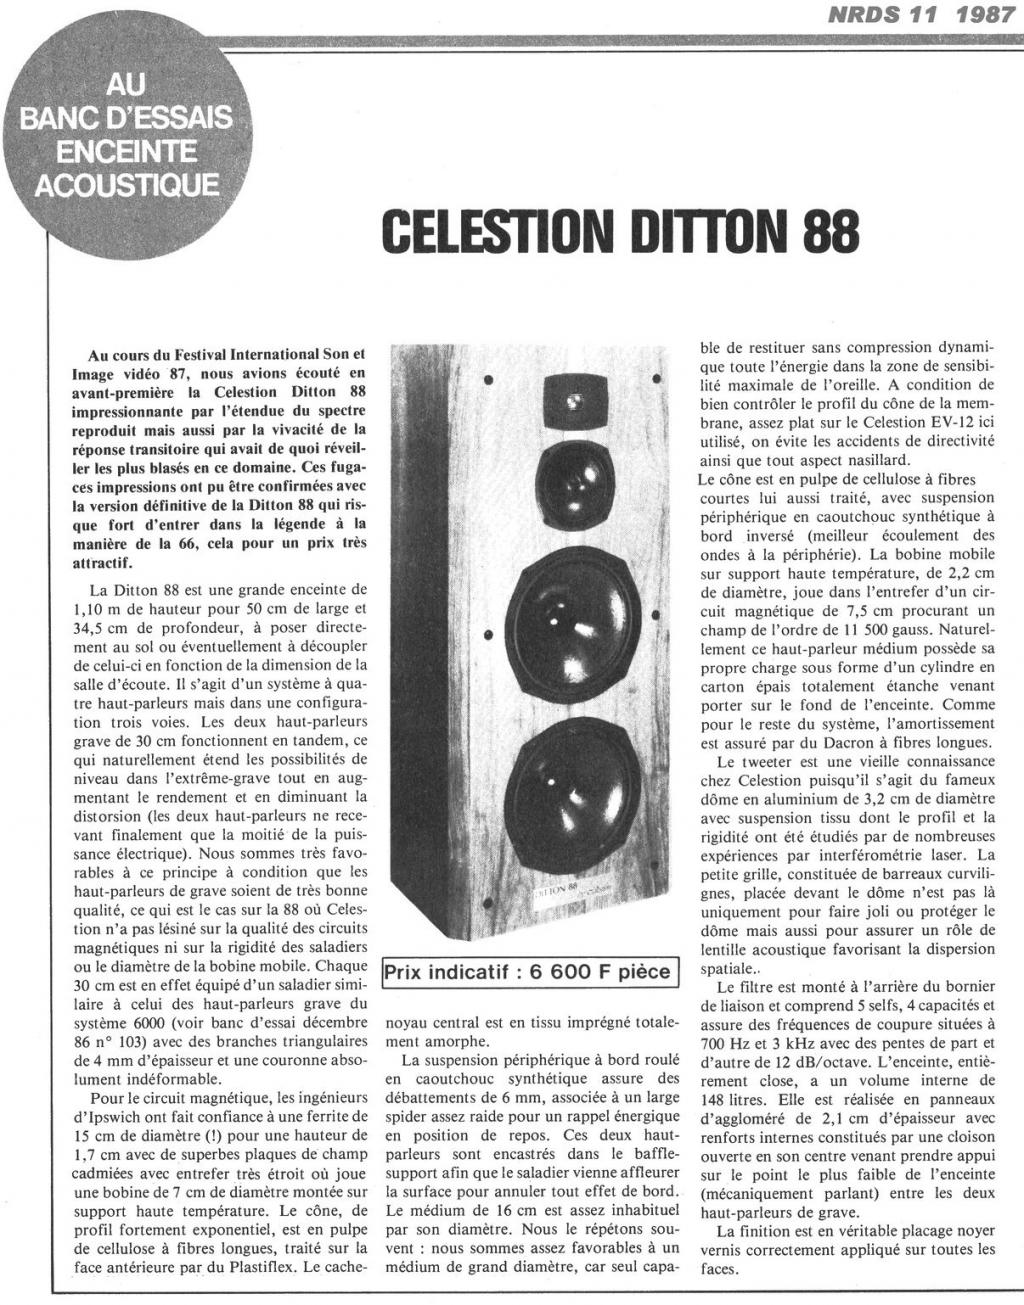 Presentacion Celestion Ditton 88  Celest16